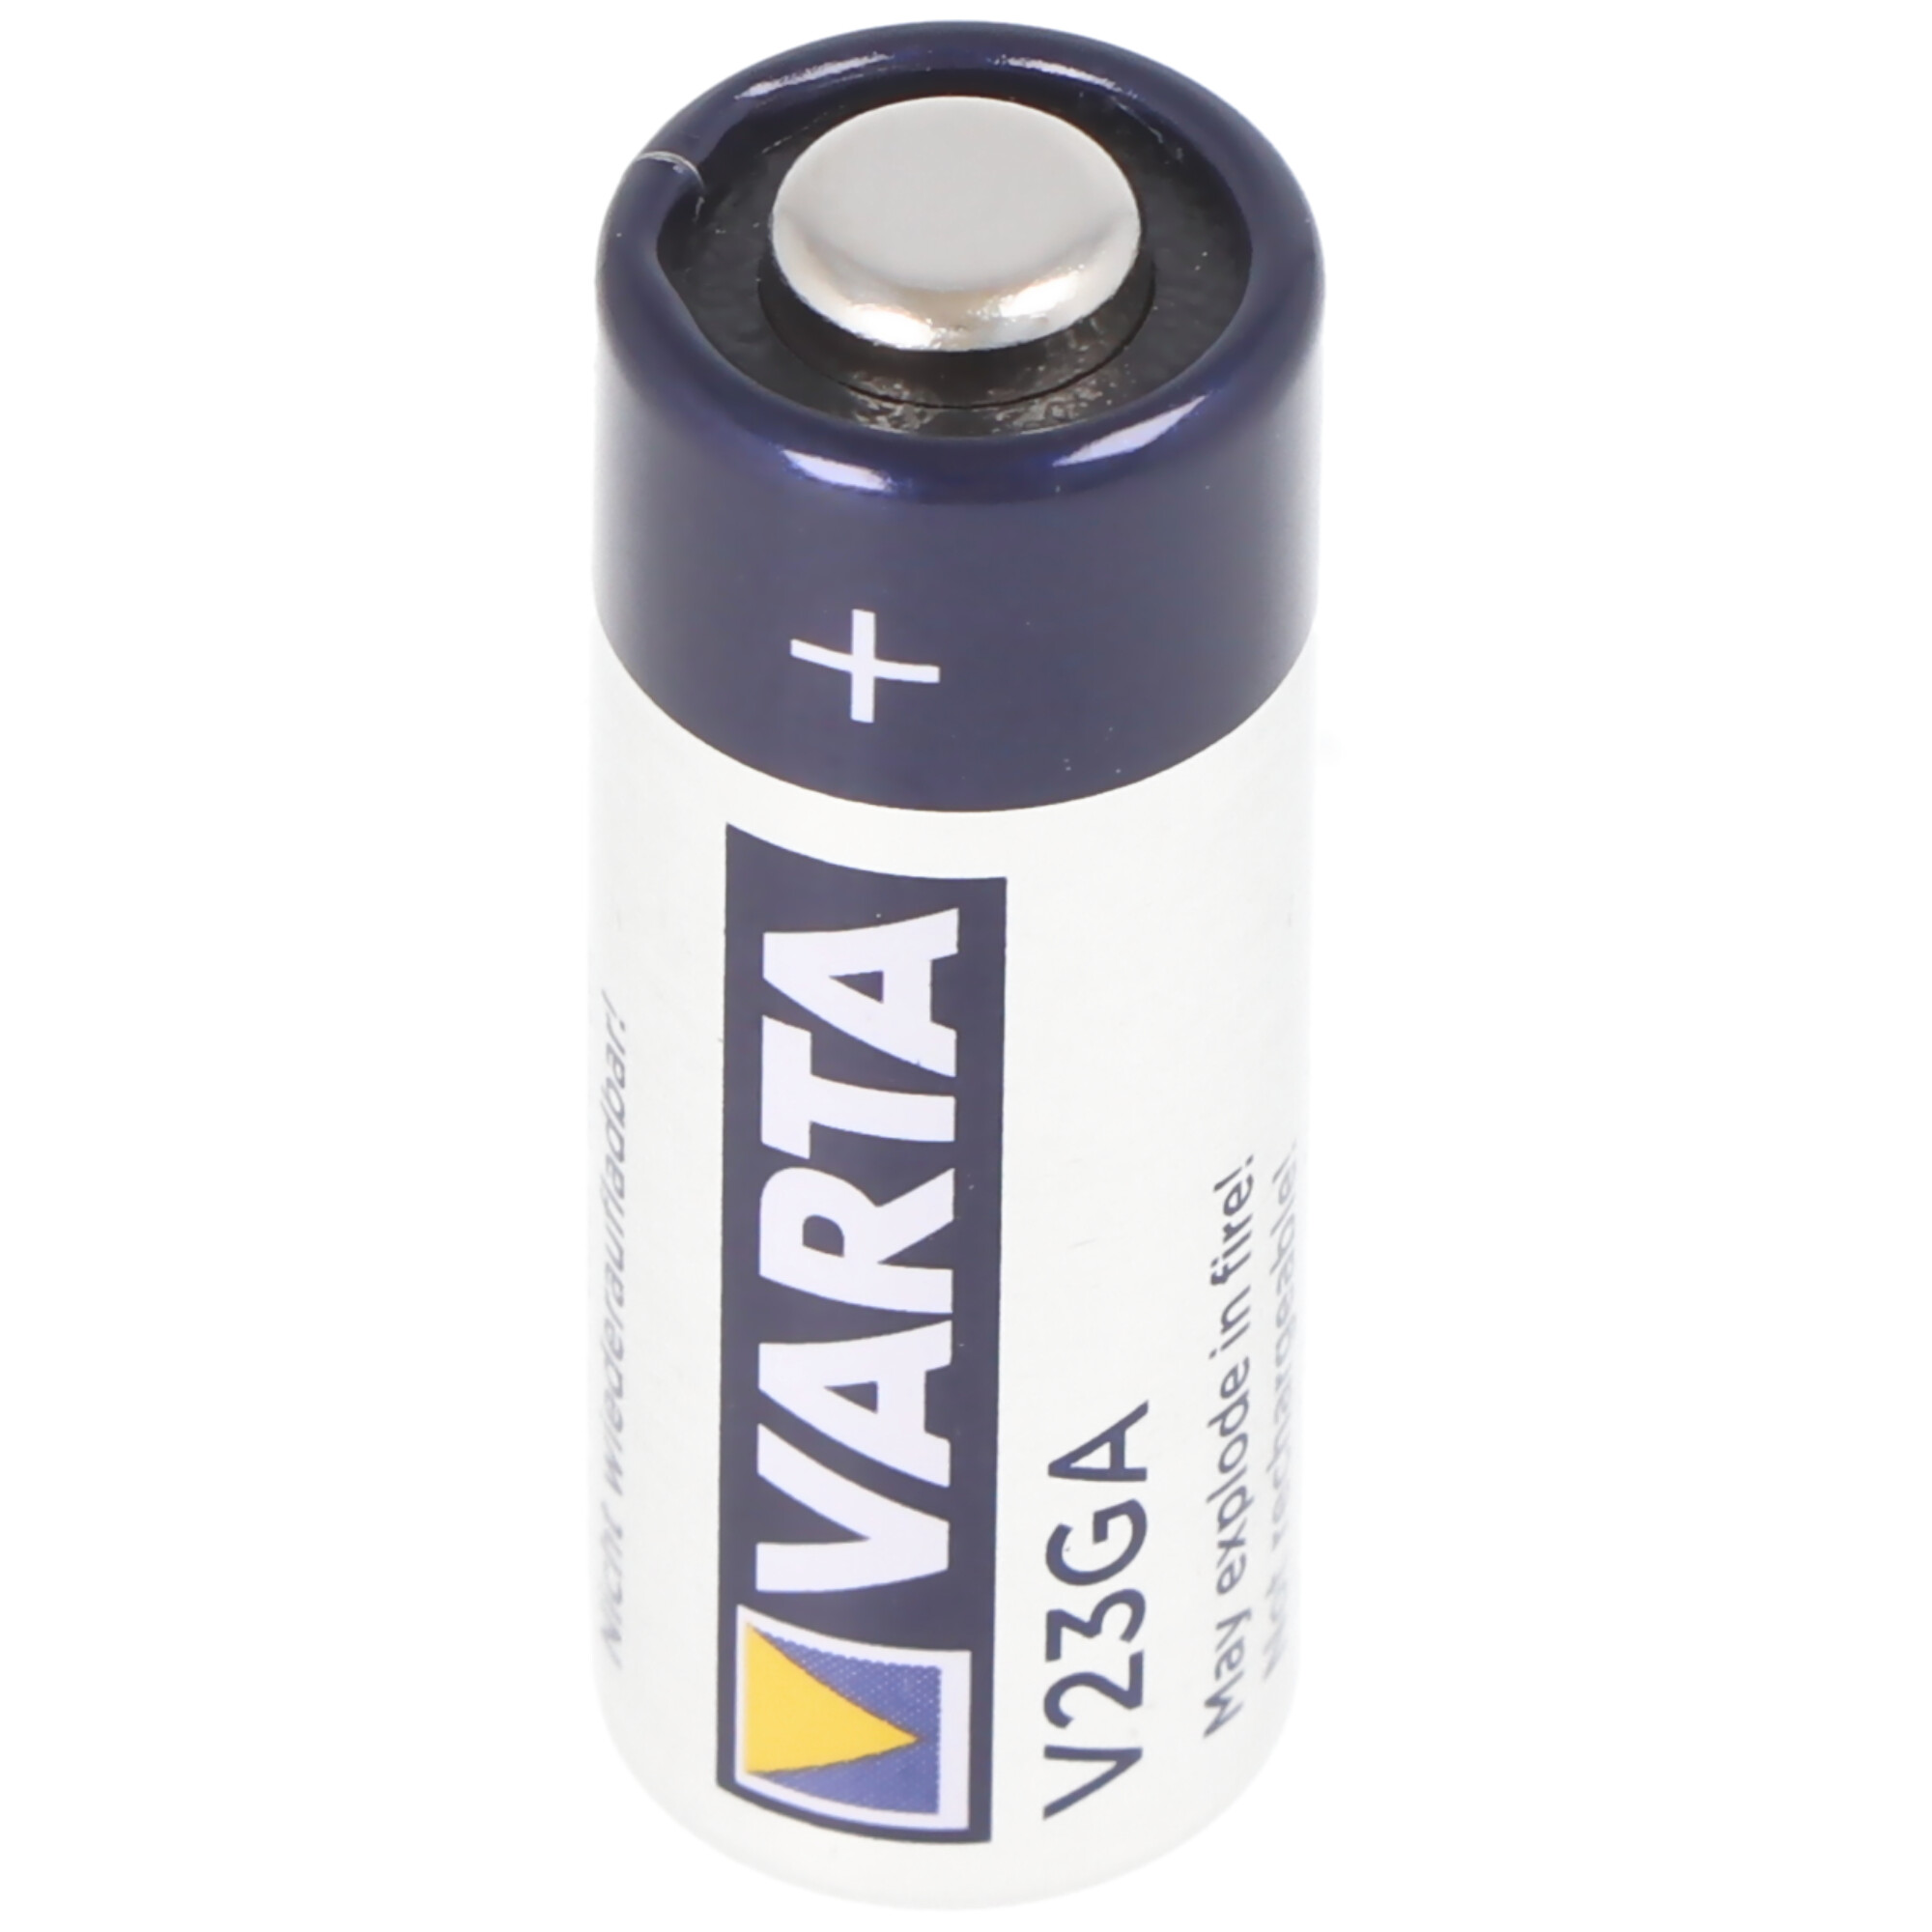 Varta V23GA 12 Volt 8LR932 Batterie kaufen